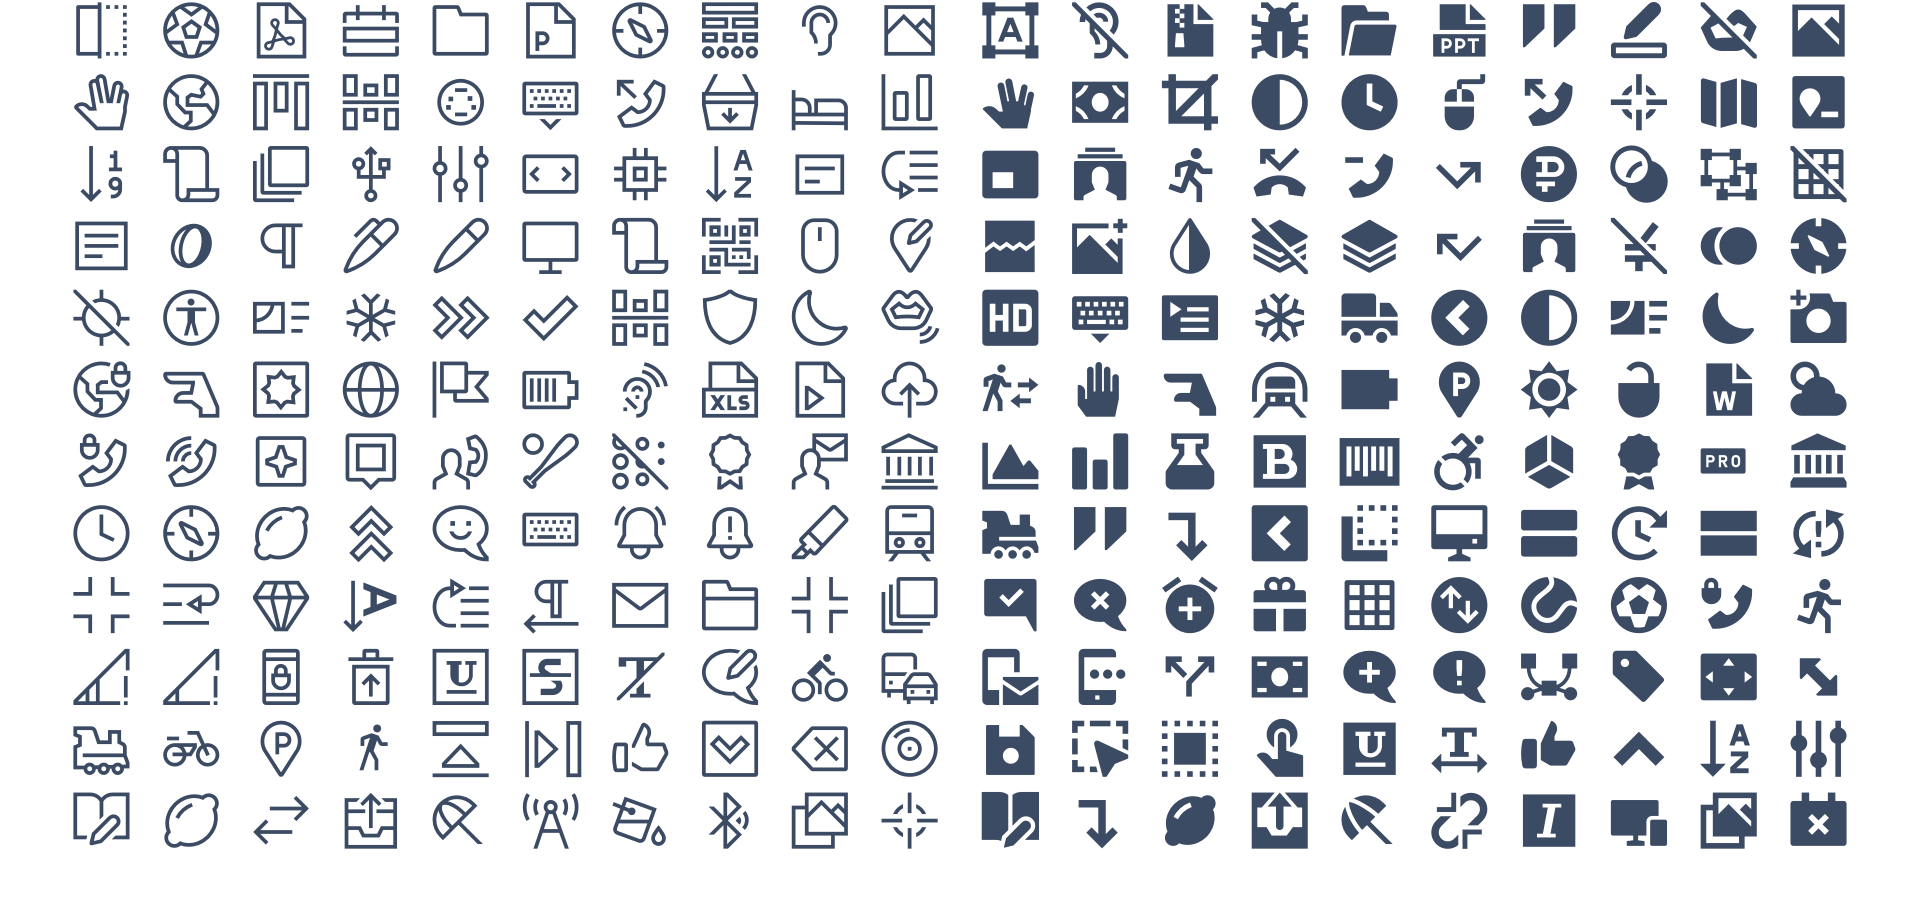 CoreUI Icons